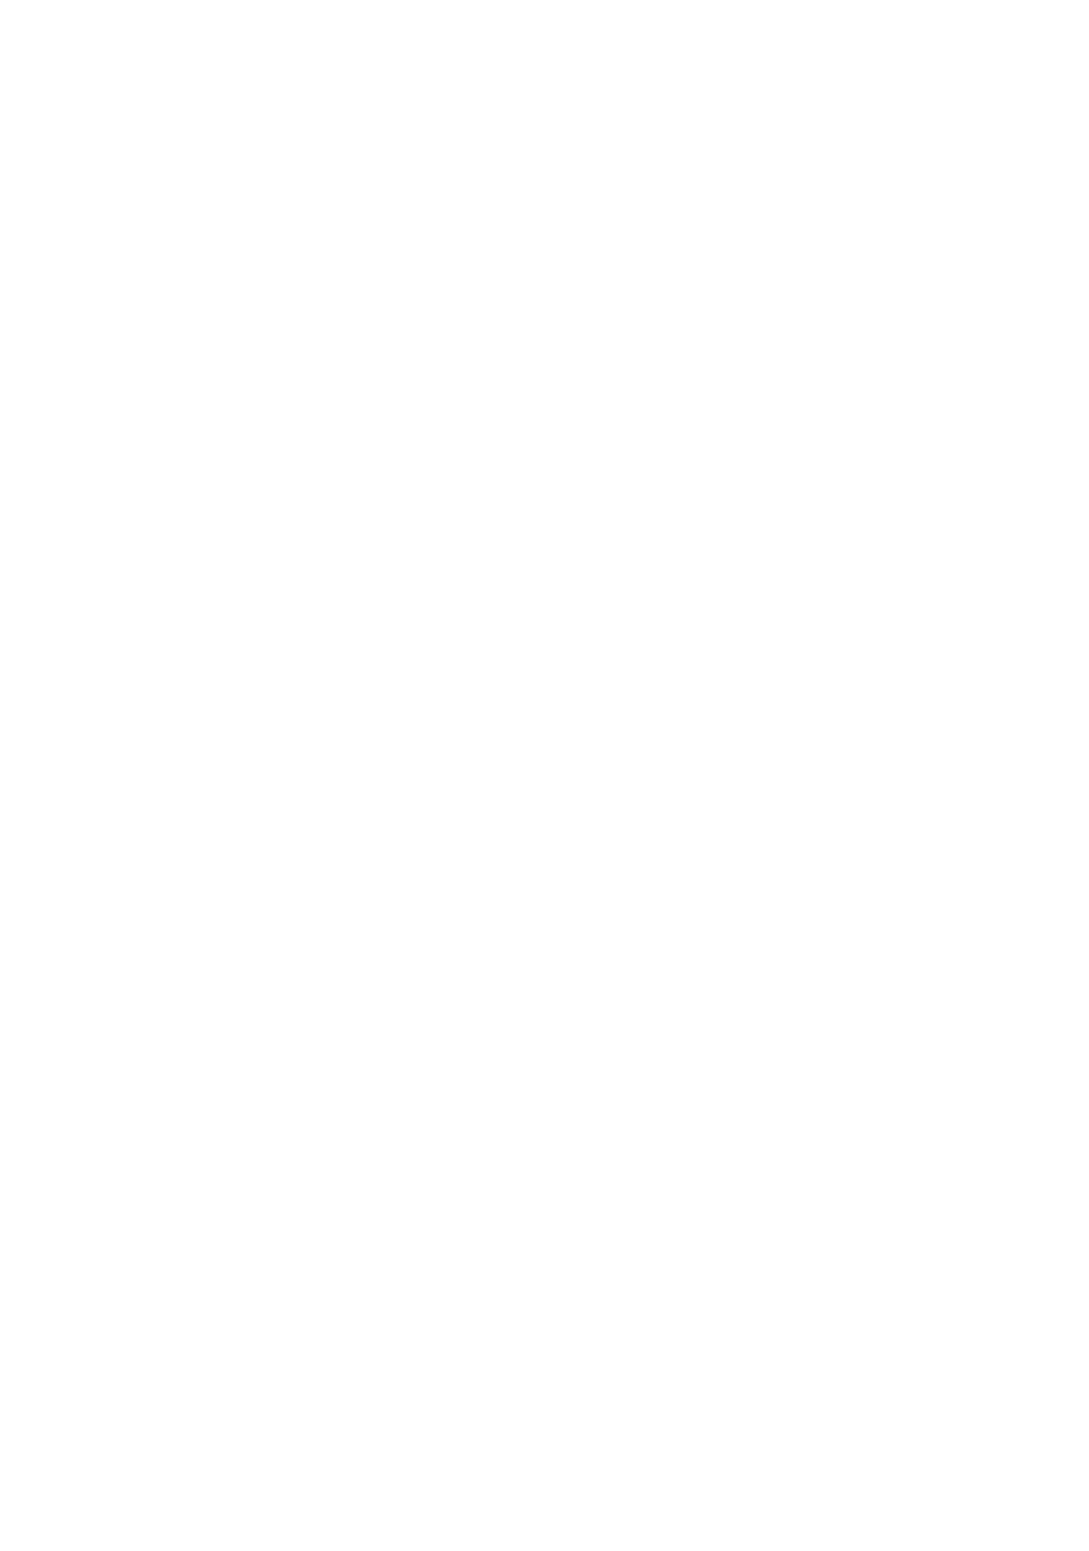 Docebo logo for dark backgrounds (transparent PNG)